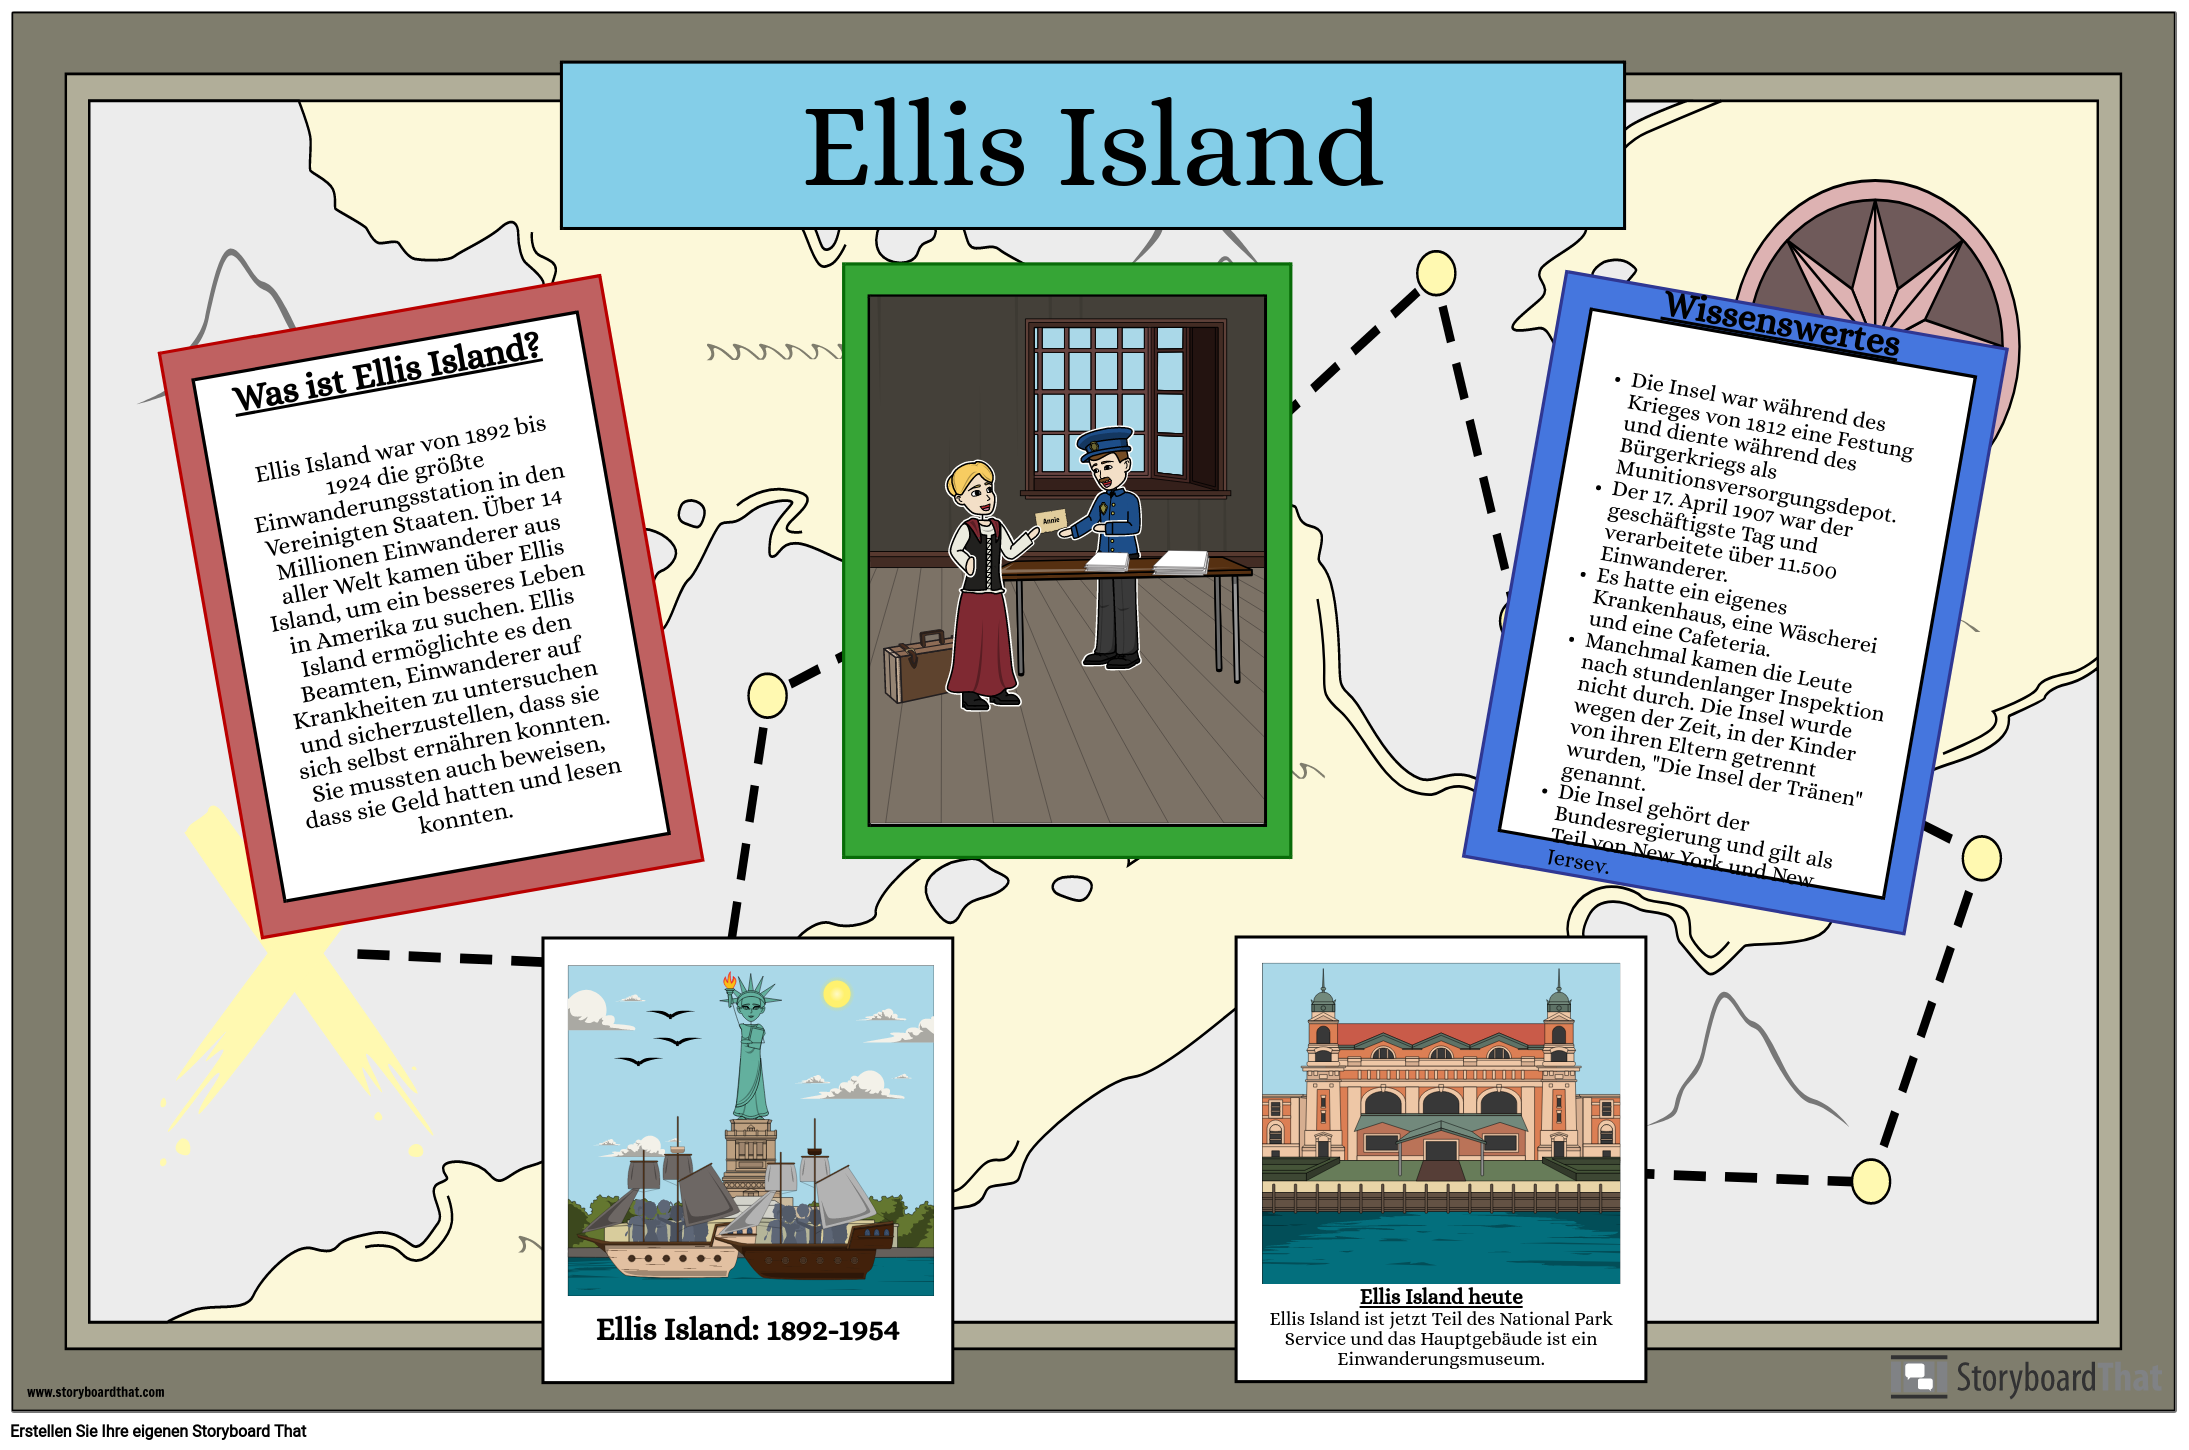 Was ist Ellis Island?